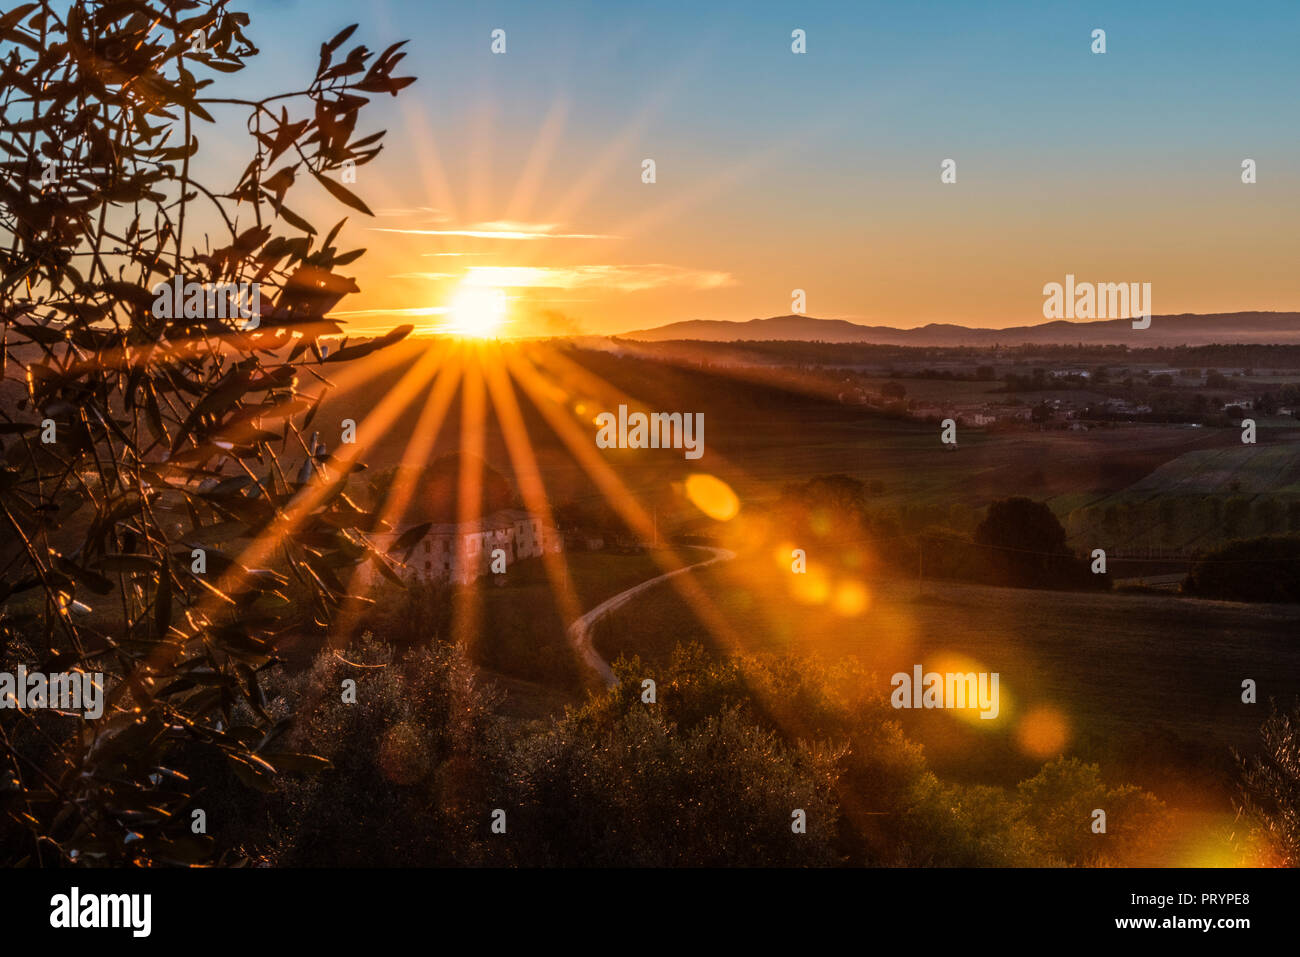 Italia, Toscana, puesta de sol en la provincia de Siena Foto de stock